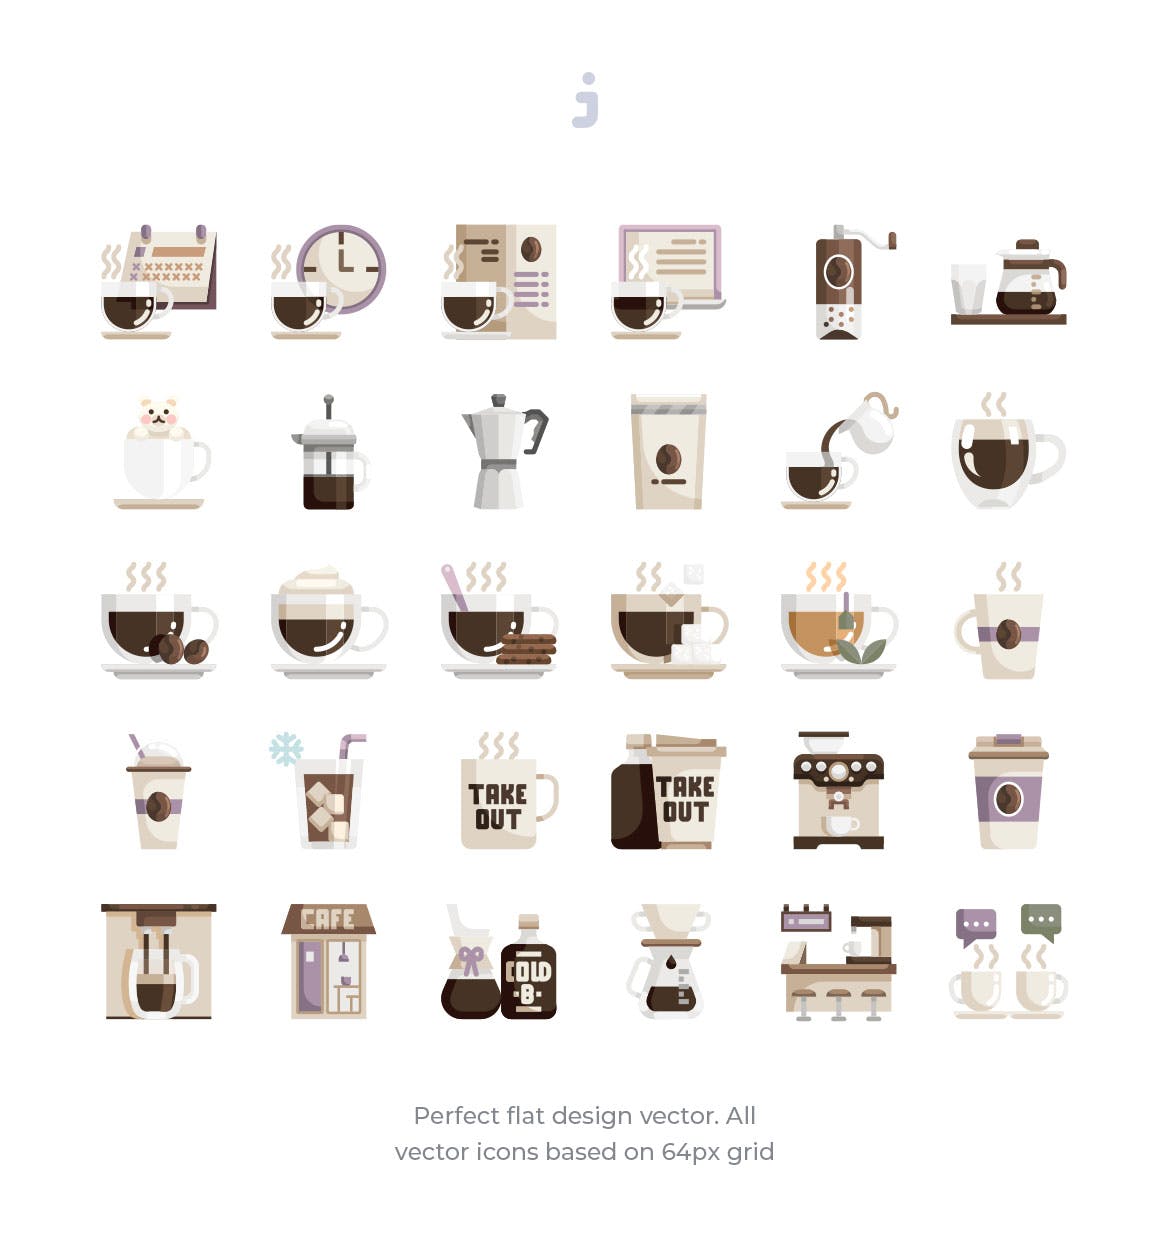 30枚咖啡/咖啡店扁平设计风格矢量蚂蚁素材精选图标素材 30 Coffee Shop Icons – Flat插图(1)